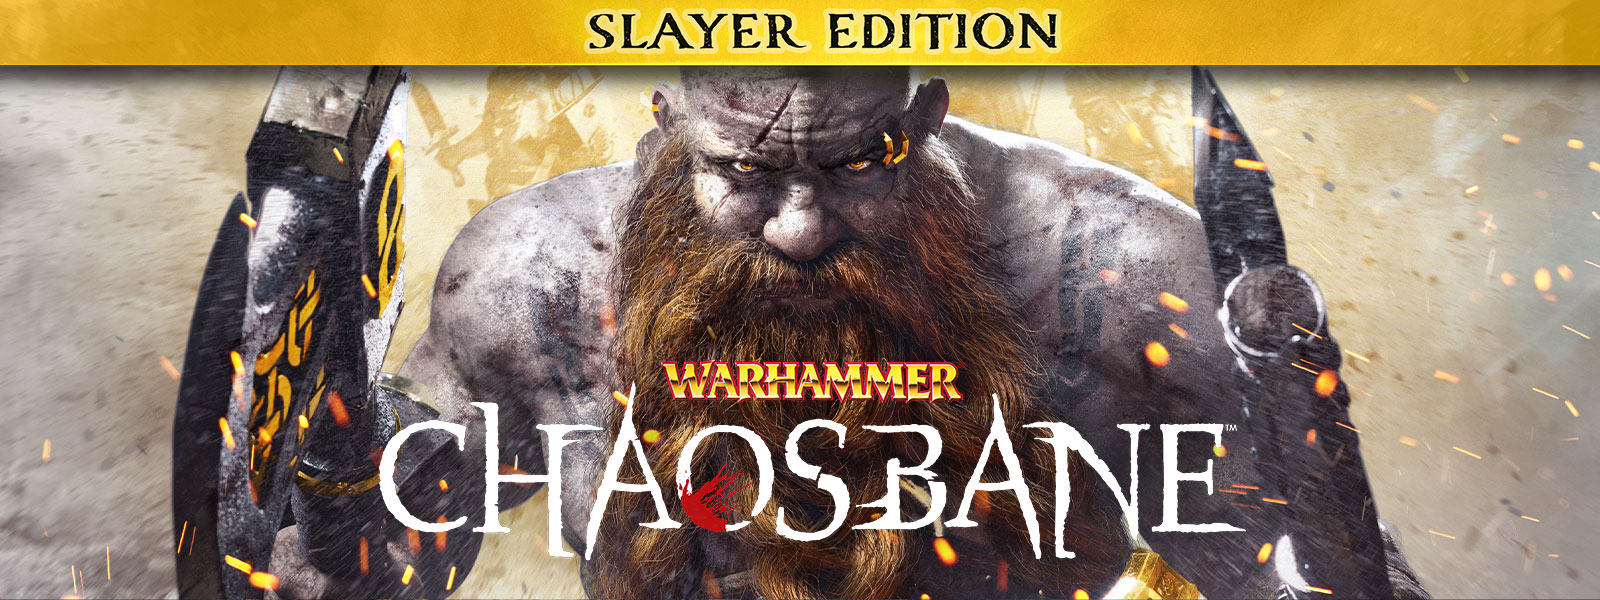 Warhammer: Chaosbane, Slayer-utgave, Edition: En skjeggete mann går gjennom flammegnister med en øks i hver hånd.